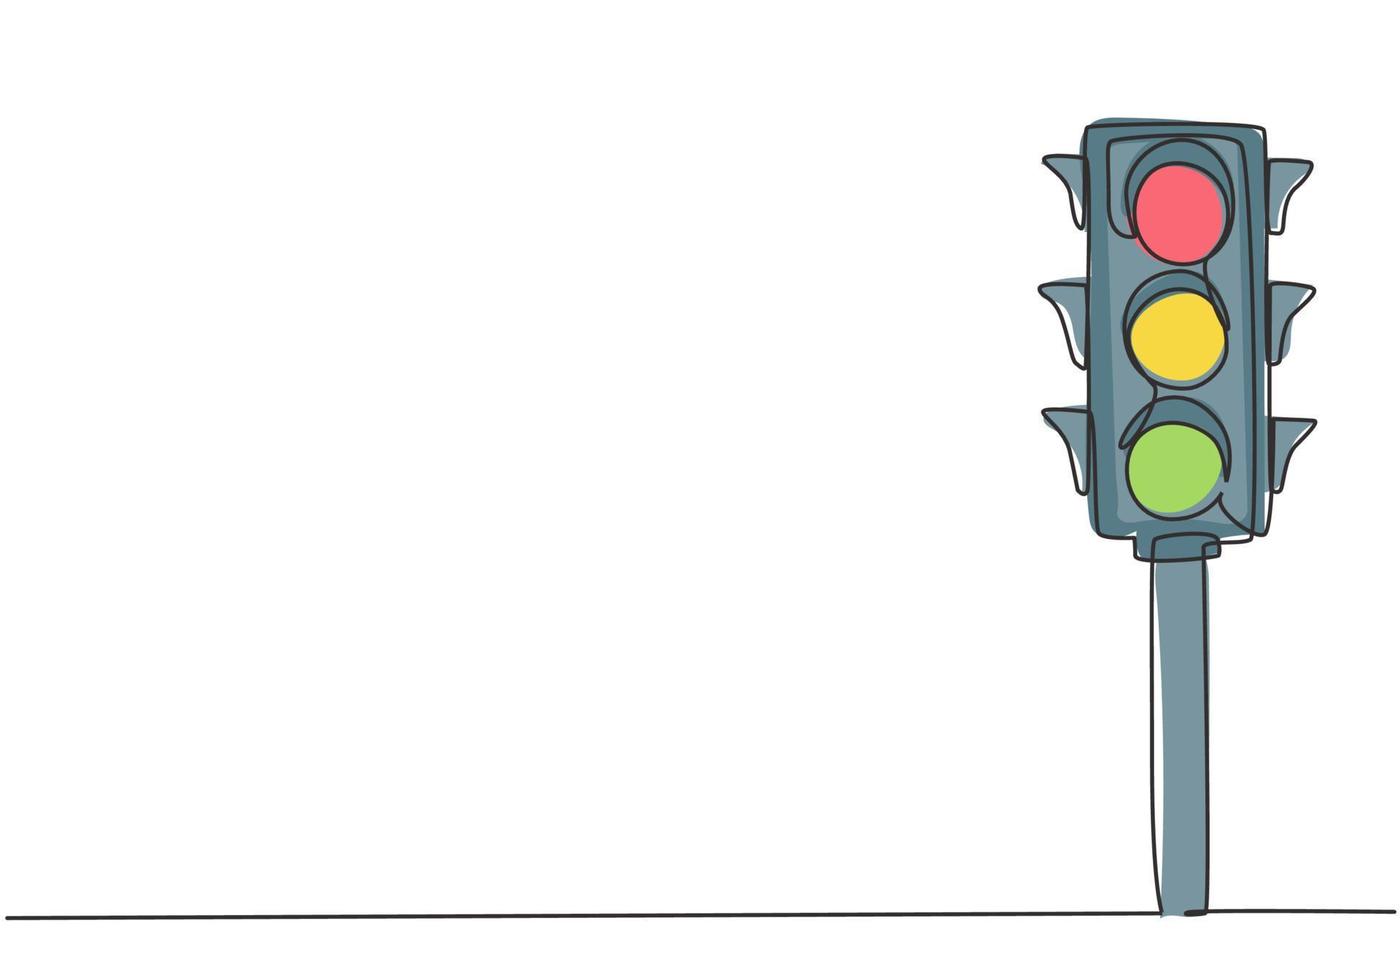 doorlopende één lijntekening van verkeerslichten met palen om het voertuigverkeer op kruispunten te regelen. er zijn rode, gele, groene lichten. enkele lijn tekenen ontwerp vector grafische afbeelding.